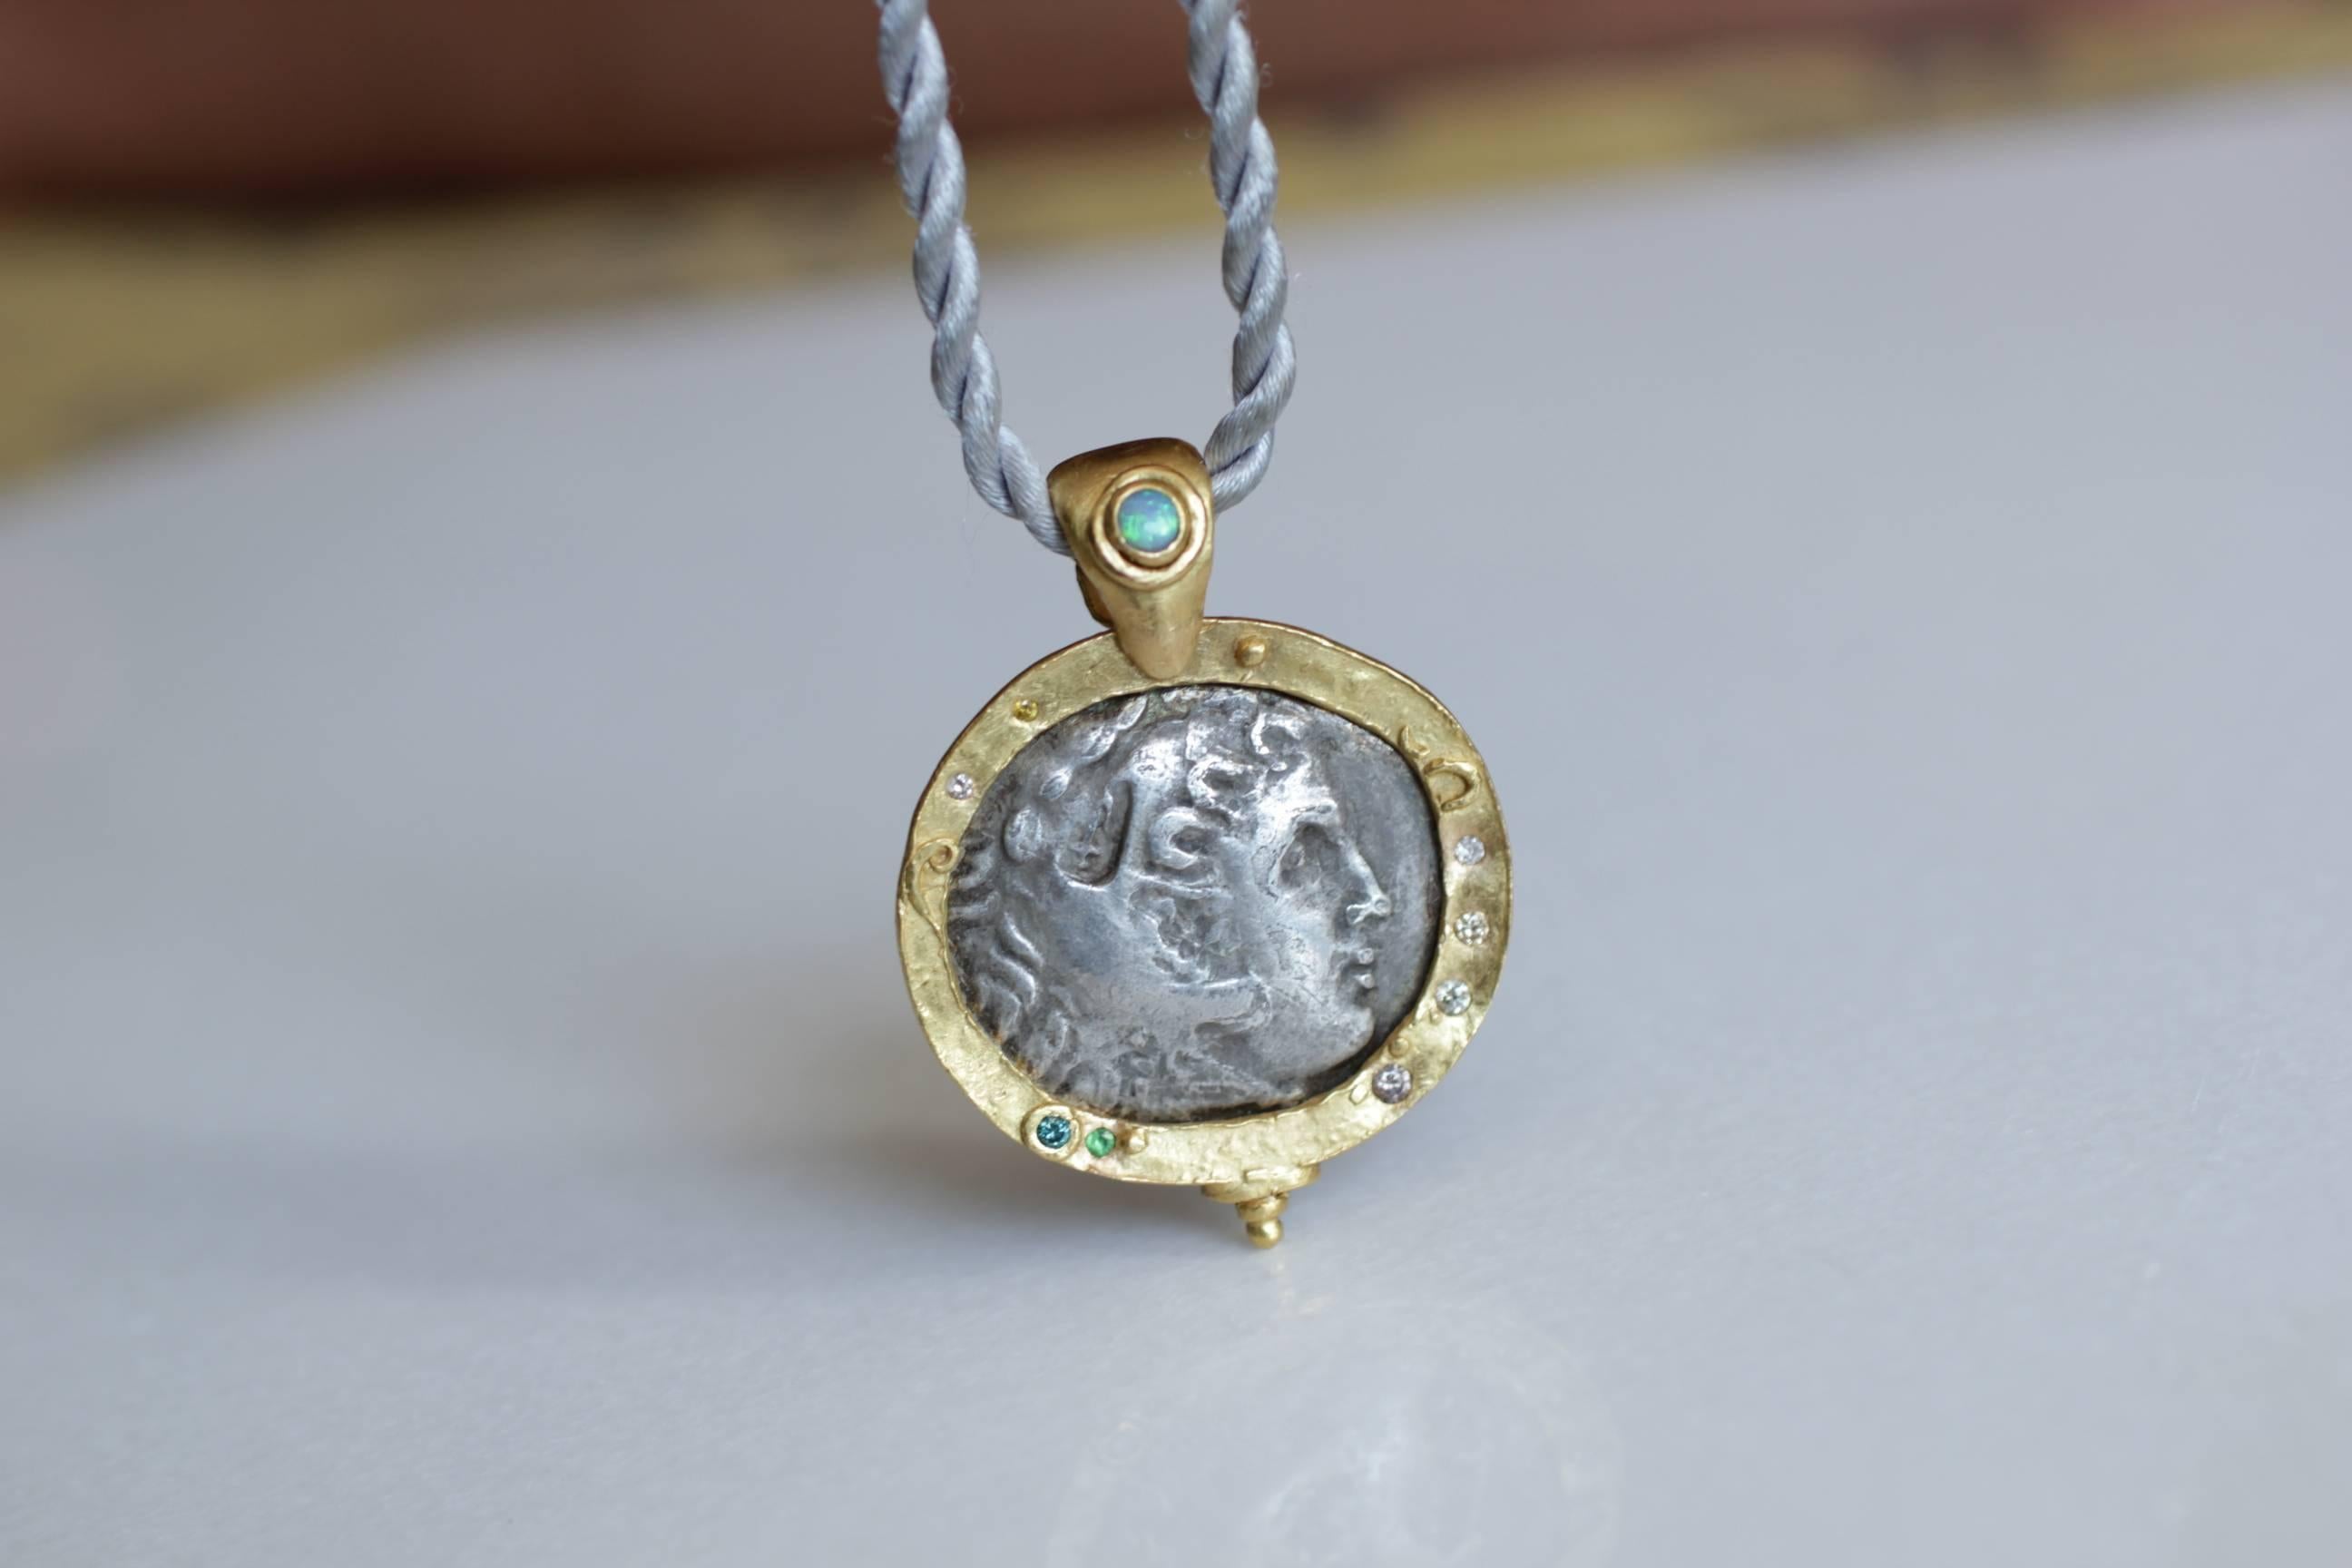 Collier pendentif en argent ancien avec médaillon en forme de pièce de monnaie macédonienne. Pièce de monnaie grecque antique du IIIe siècle avant J.-C., sertie dans un chaton en or 21 carats, rehaussée de petits diamants et de grenats. La bélière